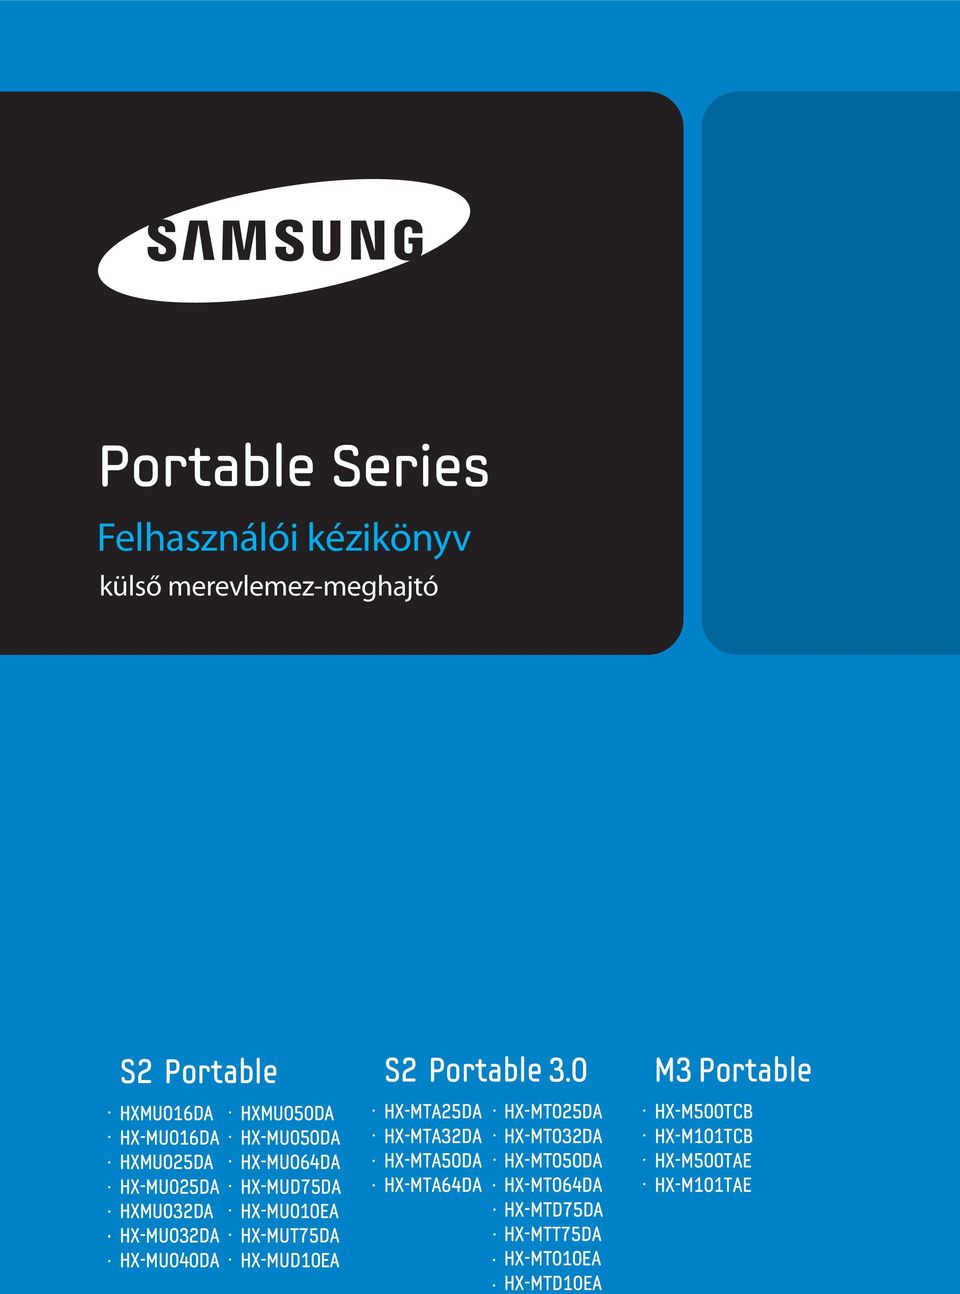 Portable Series. Felhasználói kézikönyv. M3 Portable. S2 Portable 3.0. S2  Portable. külső merevlemez-meghajtó - PDF Ingyenes letöltés